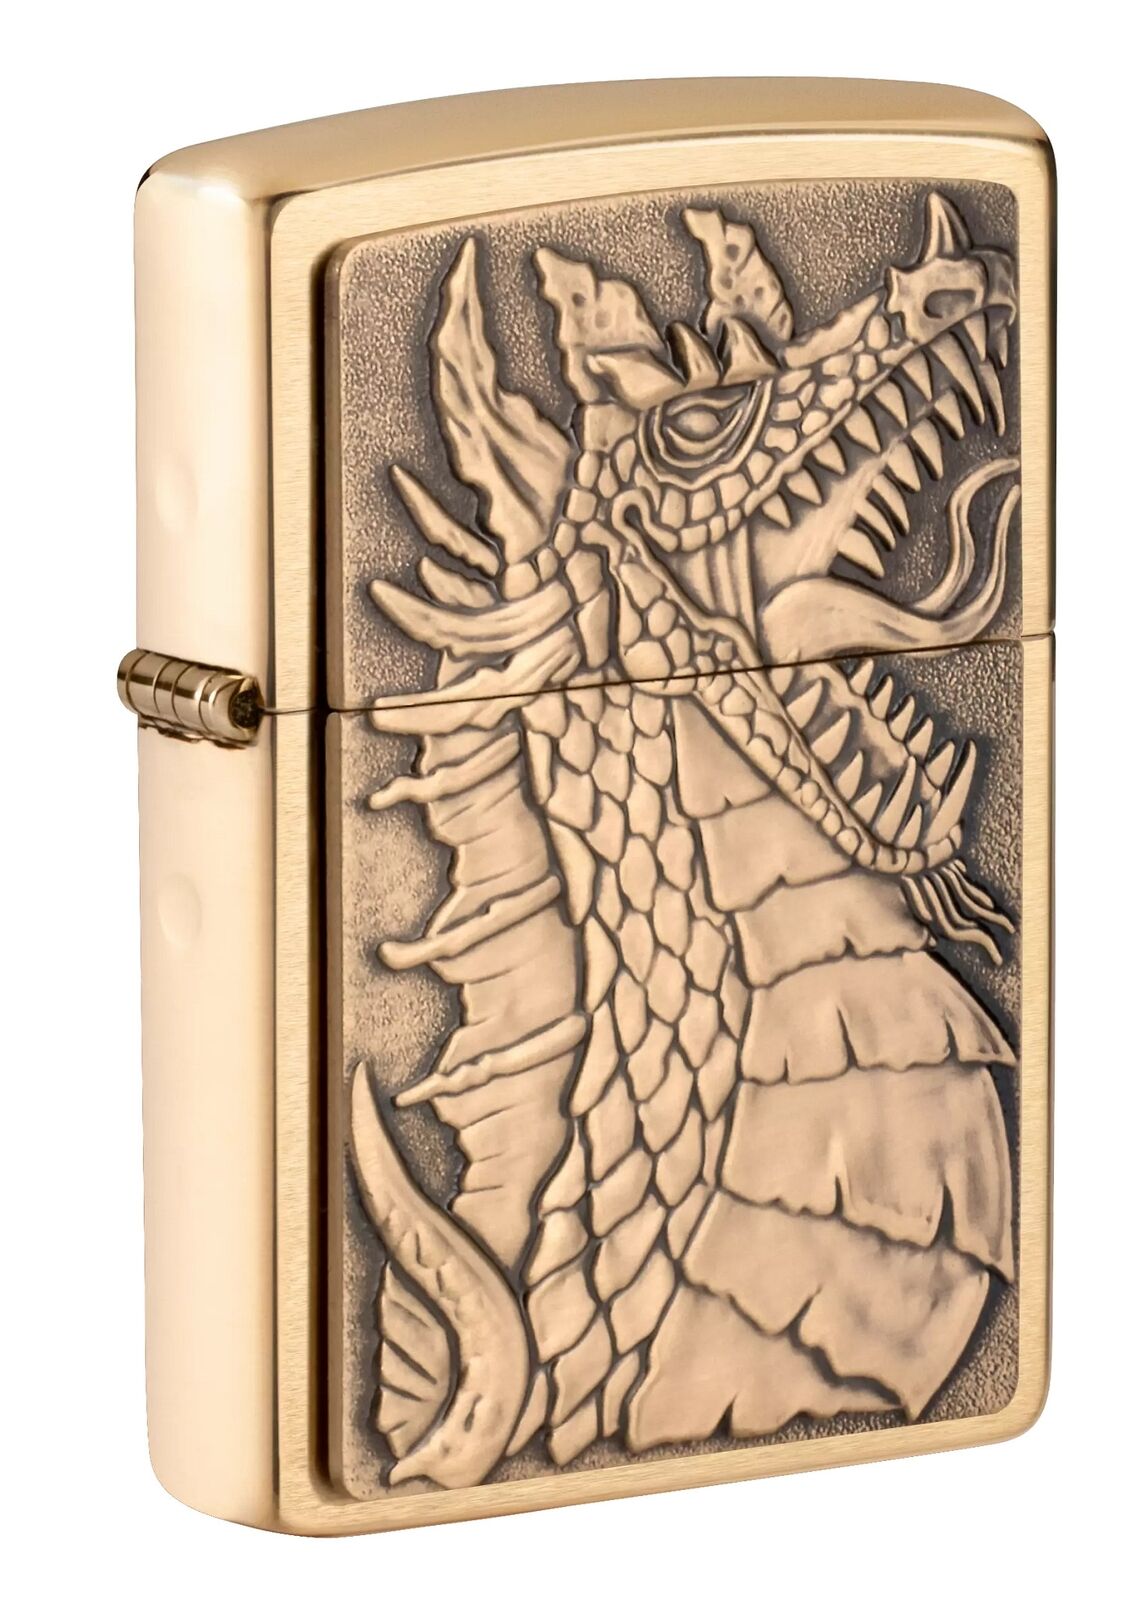 Zippo Dragon Emblem Design Brushed Brass Windproof Pocket Lighter, 49297